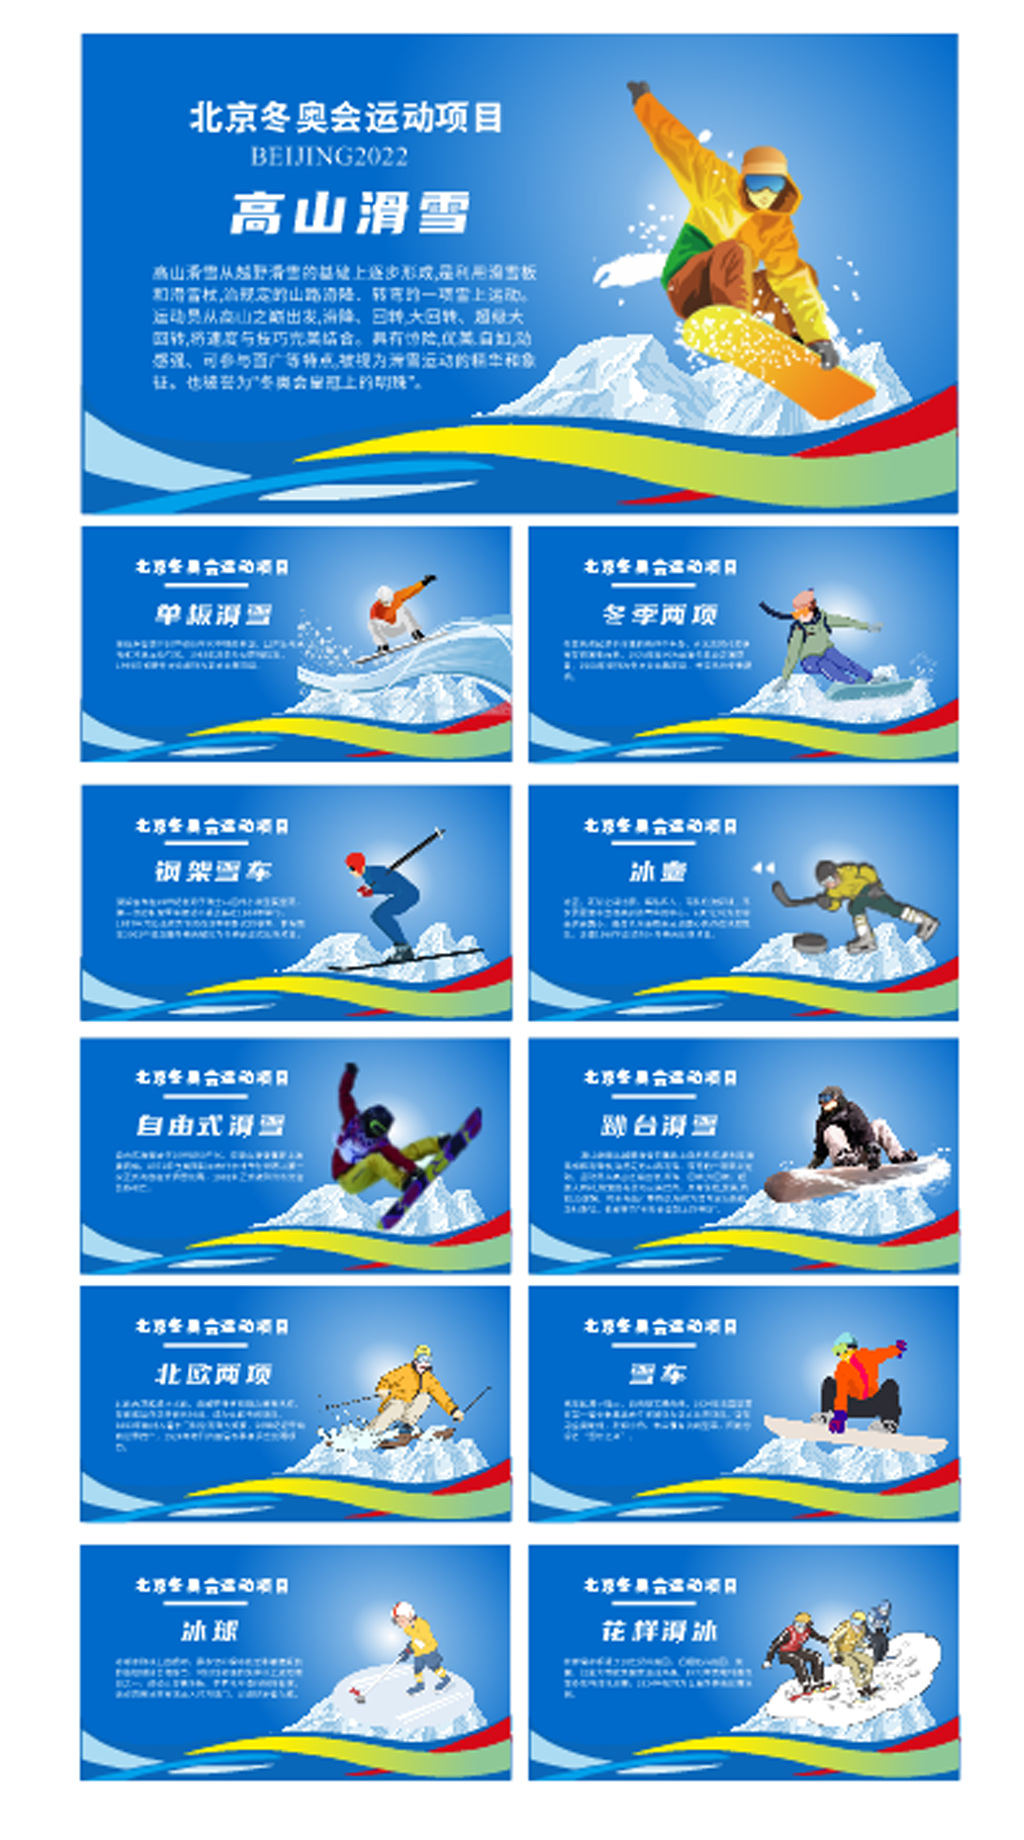 冬奥会展板样式图片